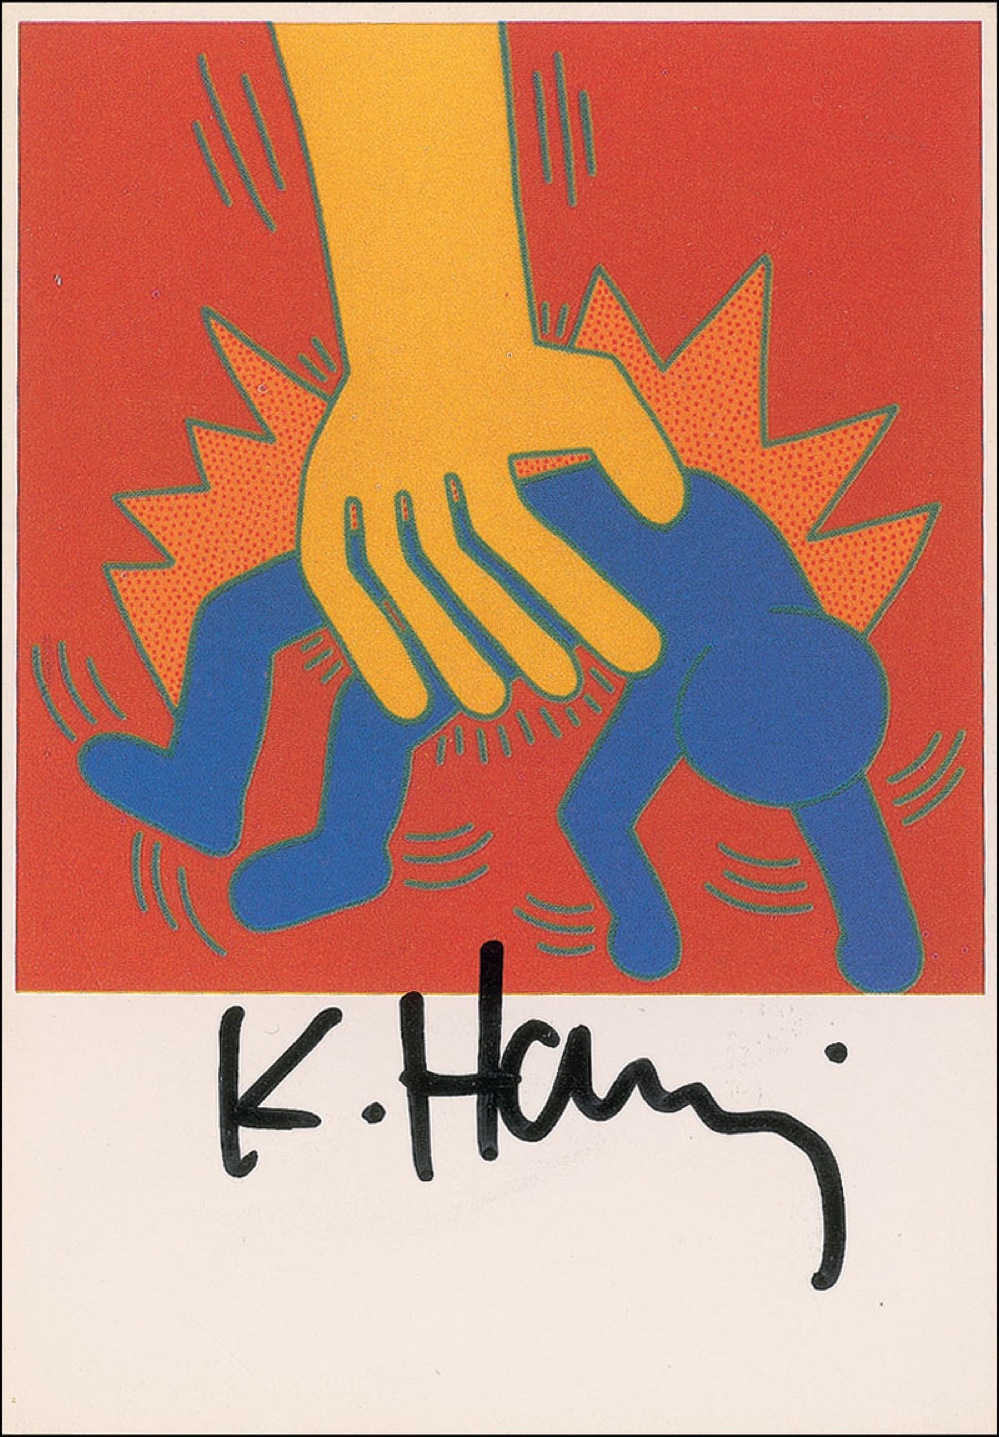 Lot #655 Keith Haring